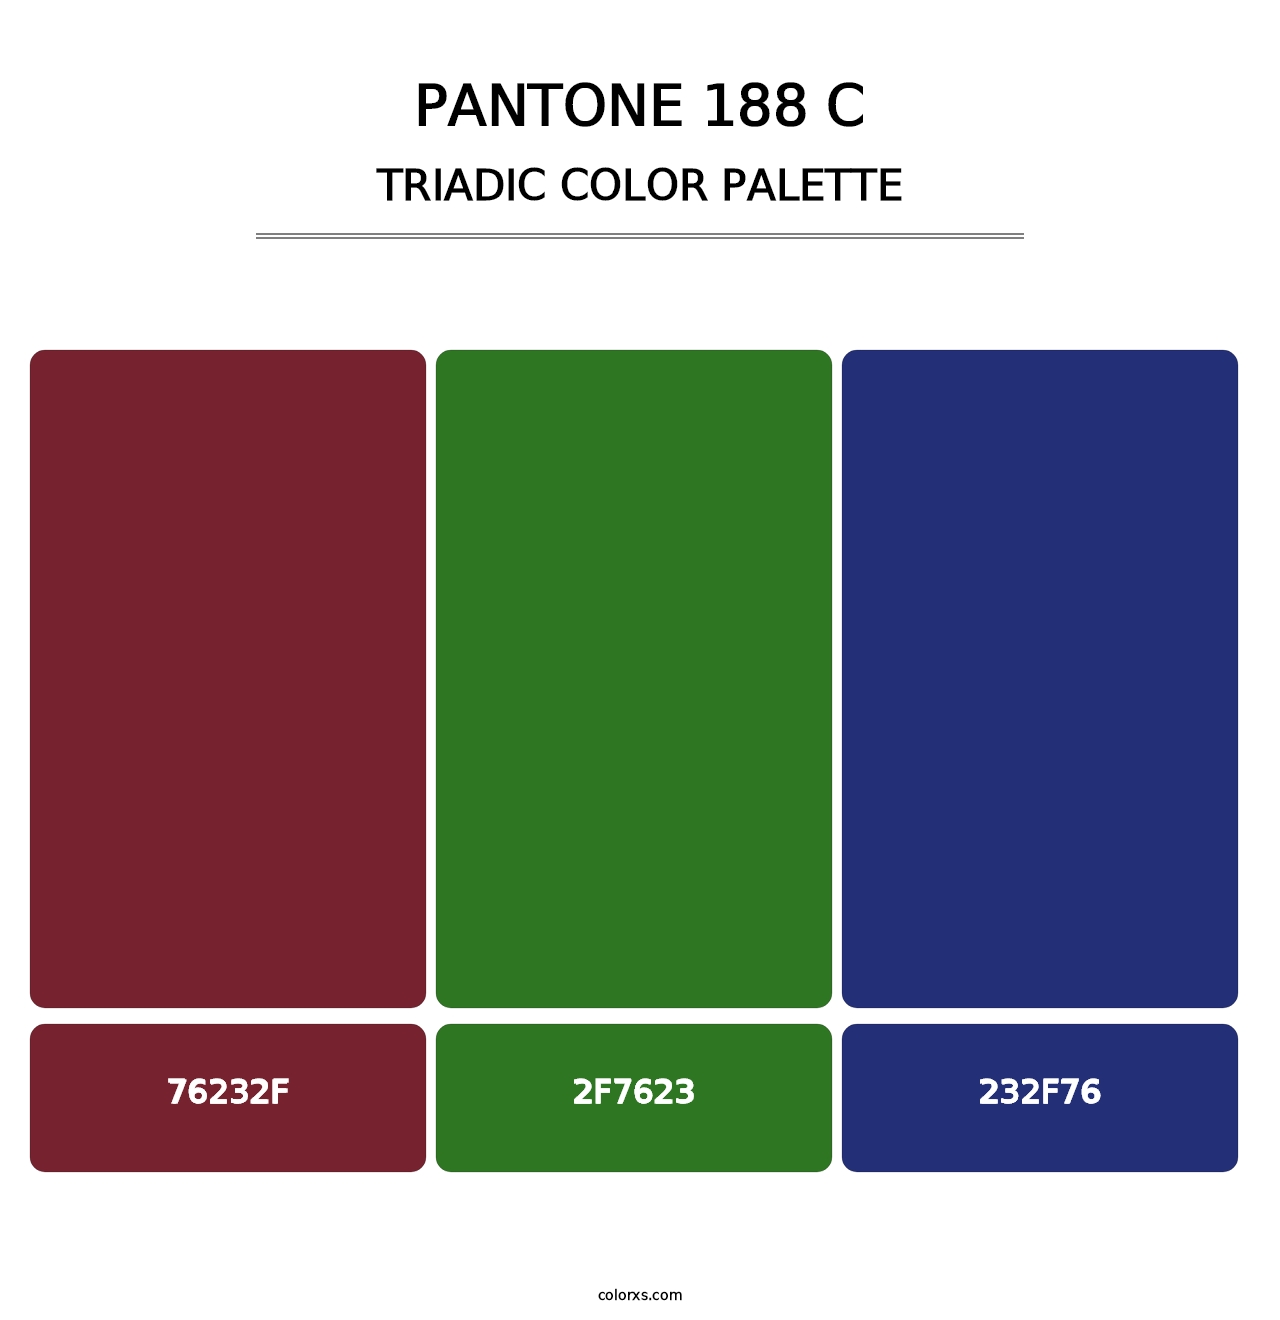 PANTONE 188 C - Triadic Color Palette